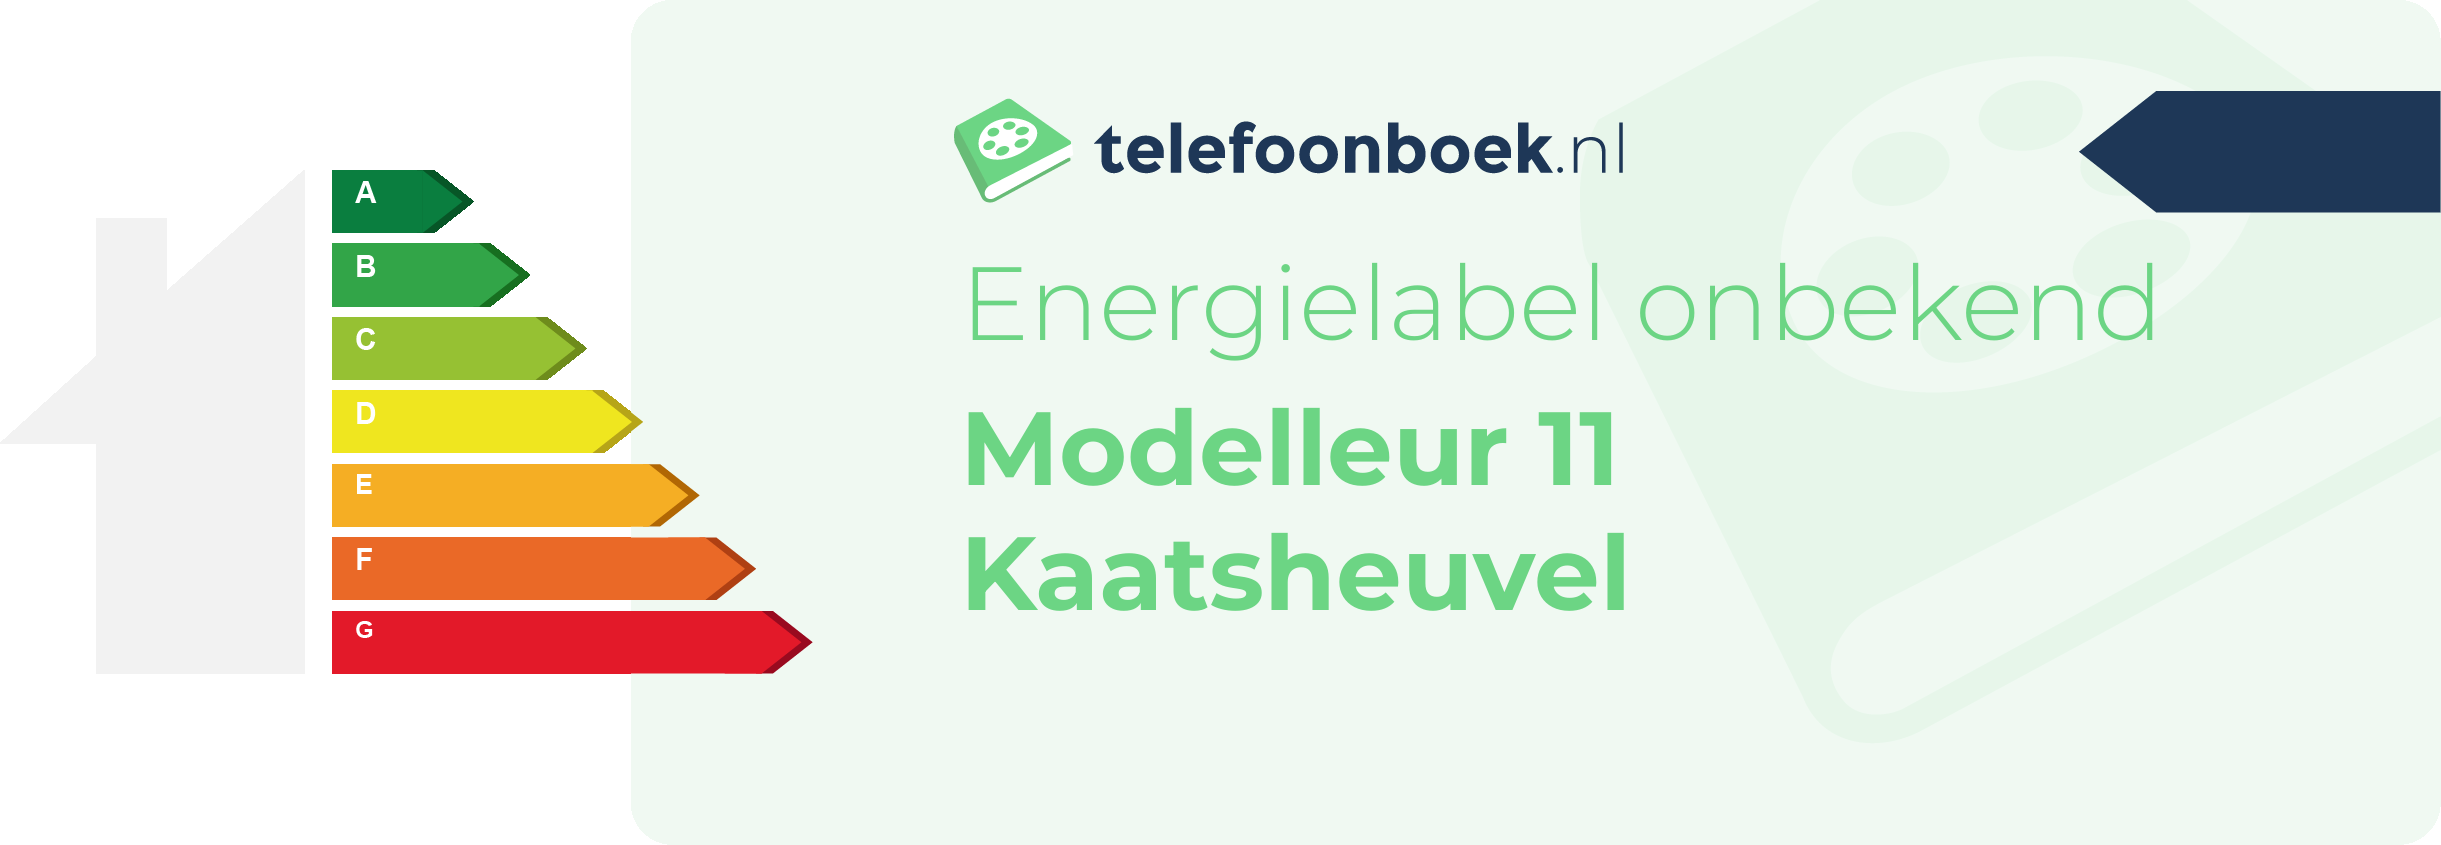 Energielabel Modelleur 11 Kaatsheuvel